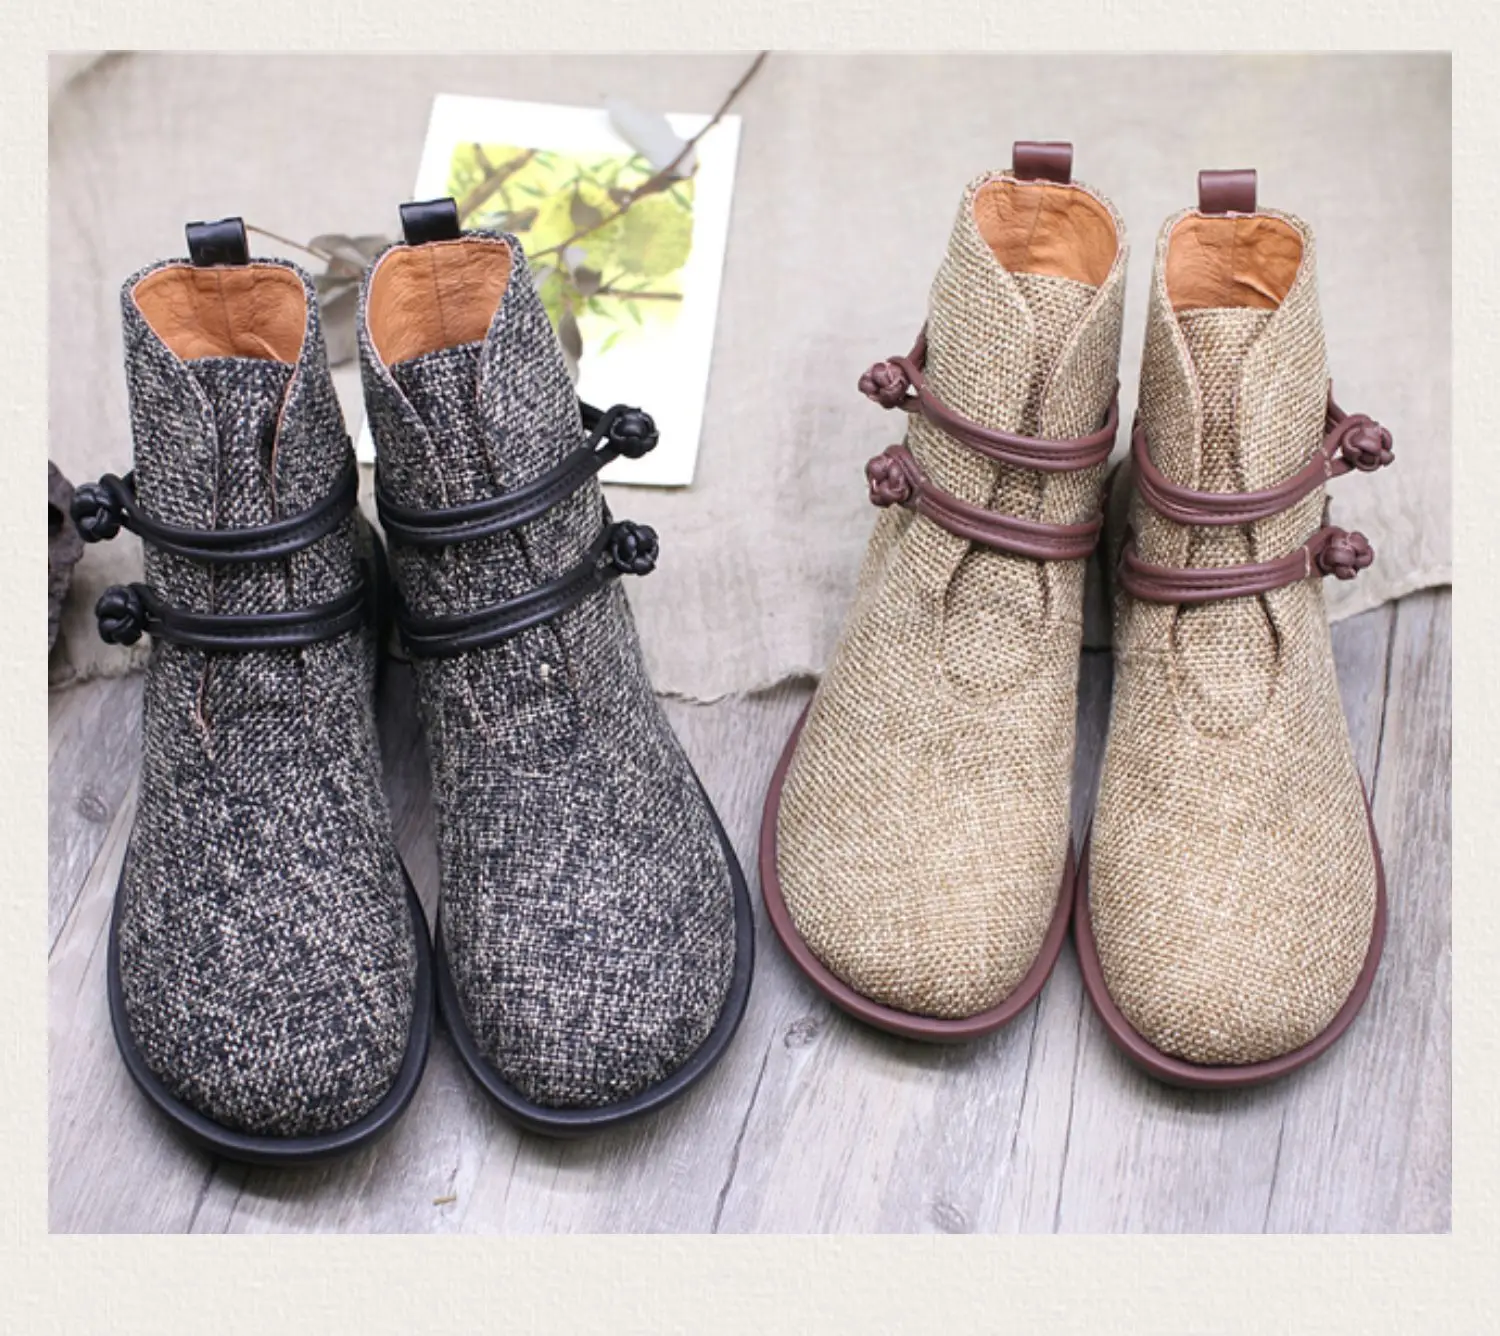 Careaymade-оригинальные ботинки ручной работы из воловьей кожи с пряжкой для отдыха в старомодном стиле; сезон осень-зима